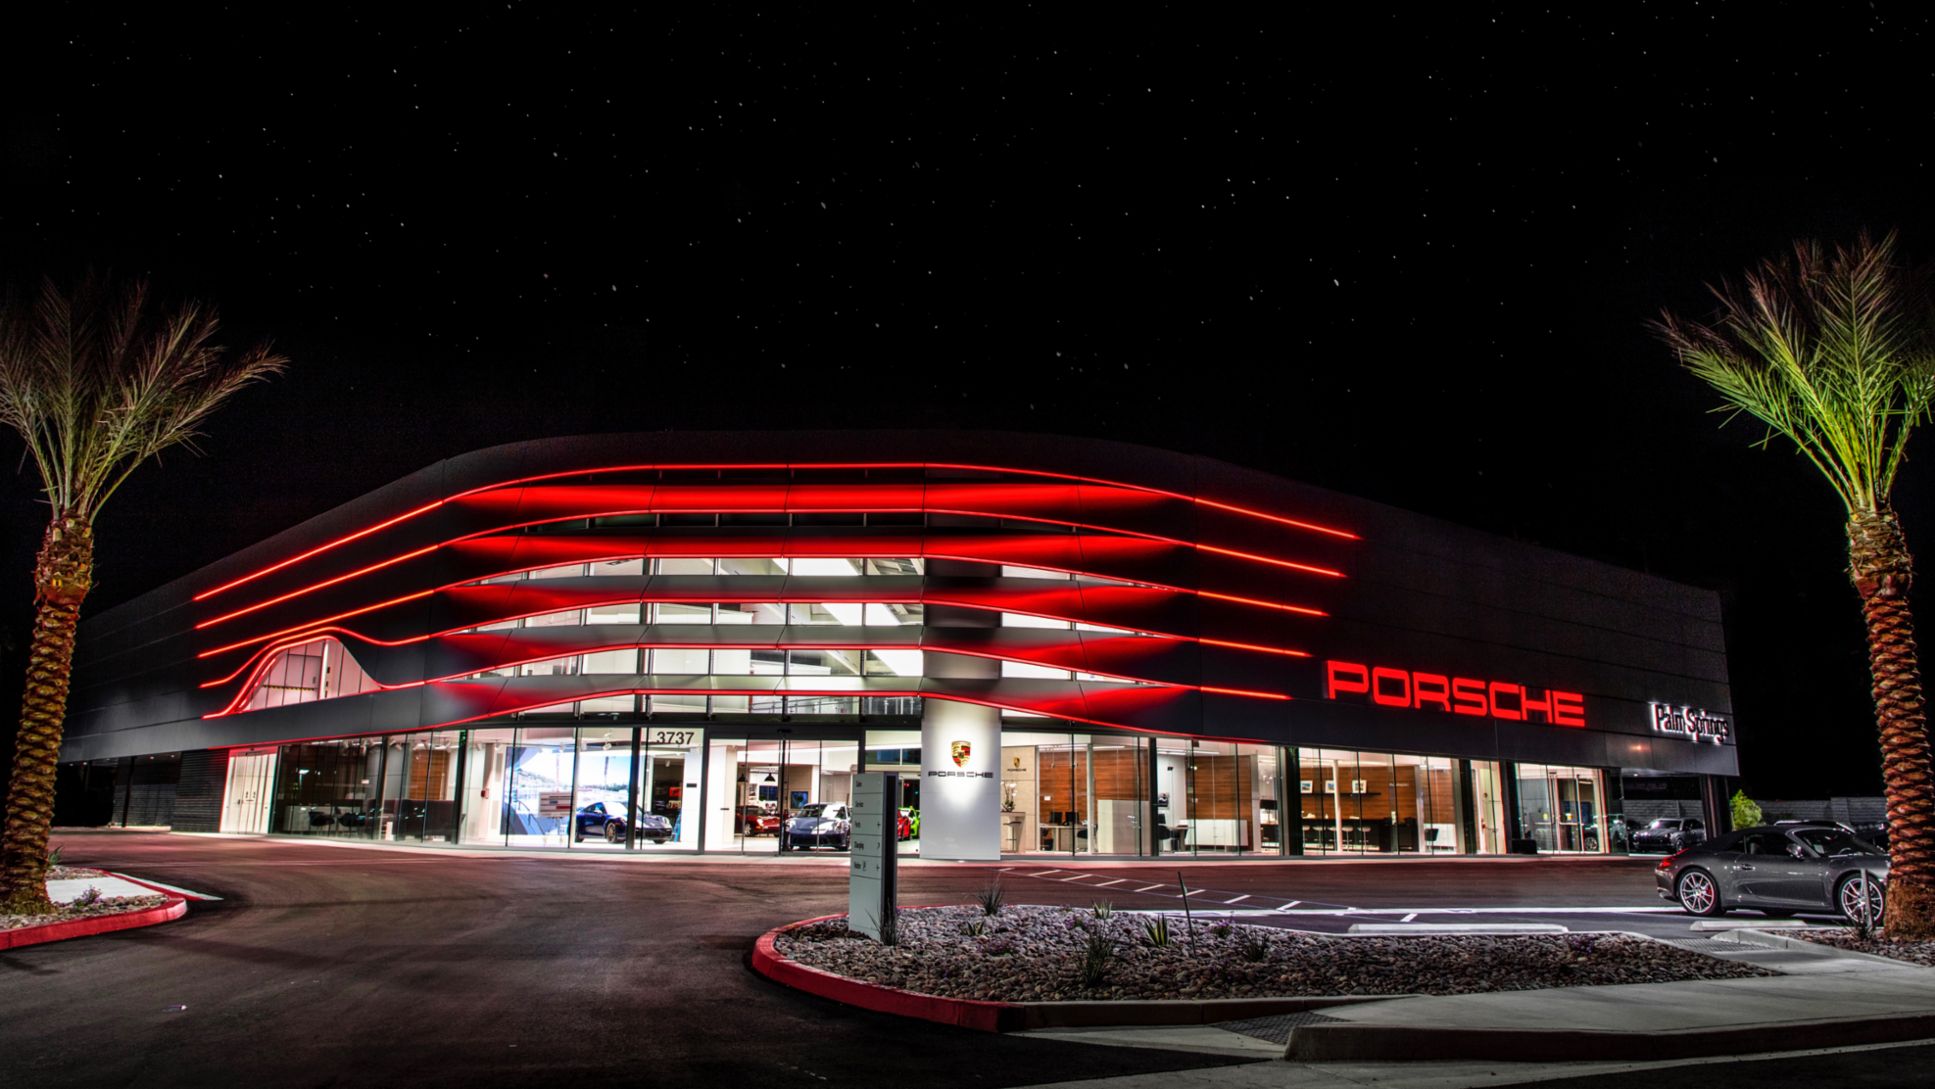 Prototyp der Corporate Architecture für Porsche Zentren, Palm Springs, 2019, Porsche AG